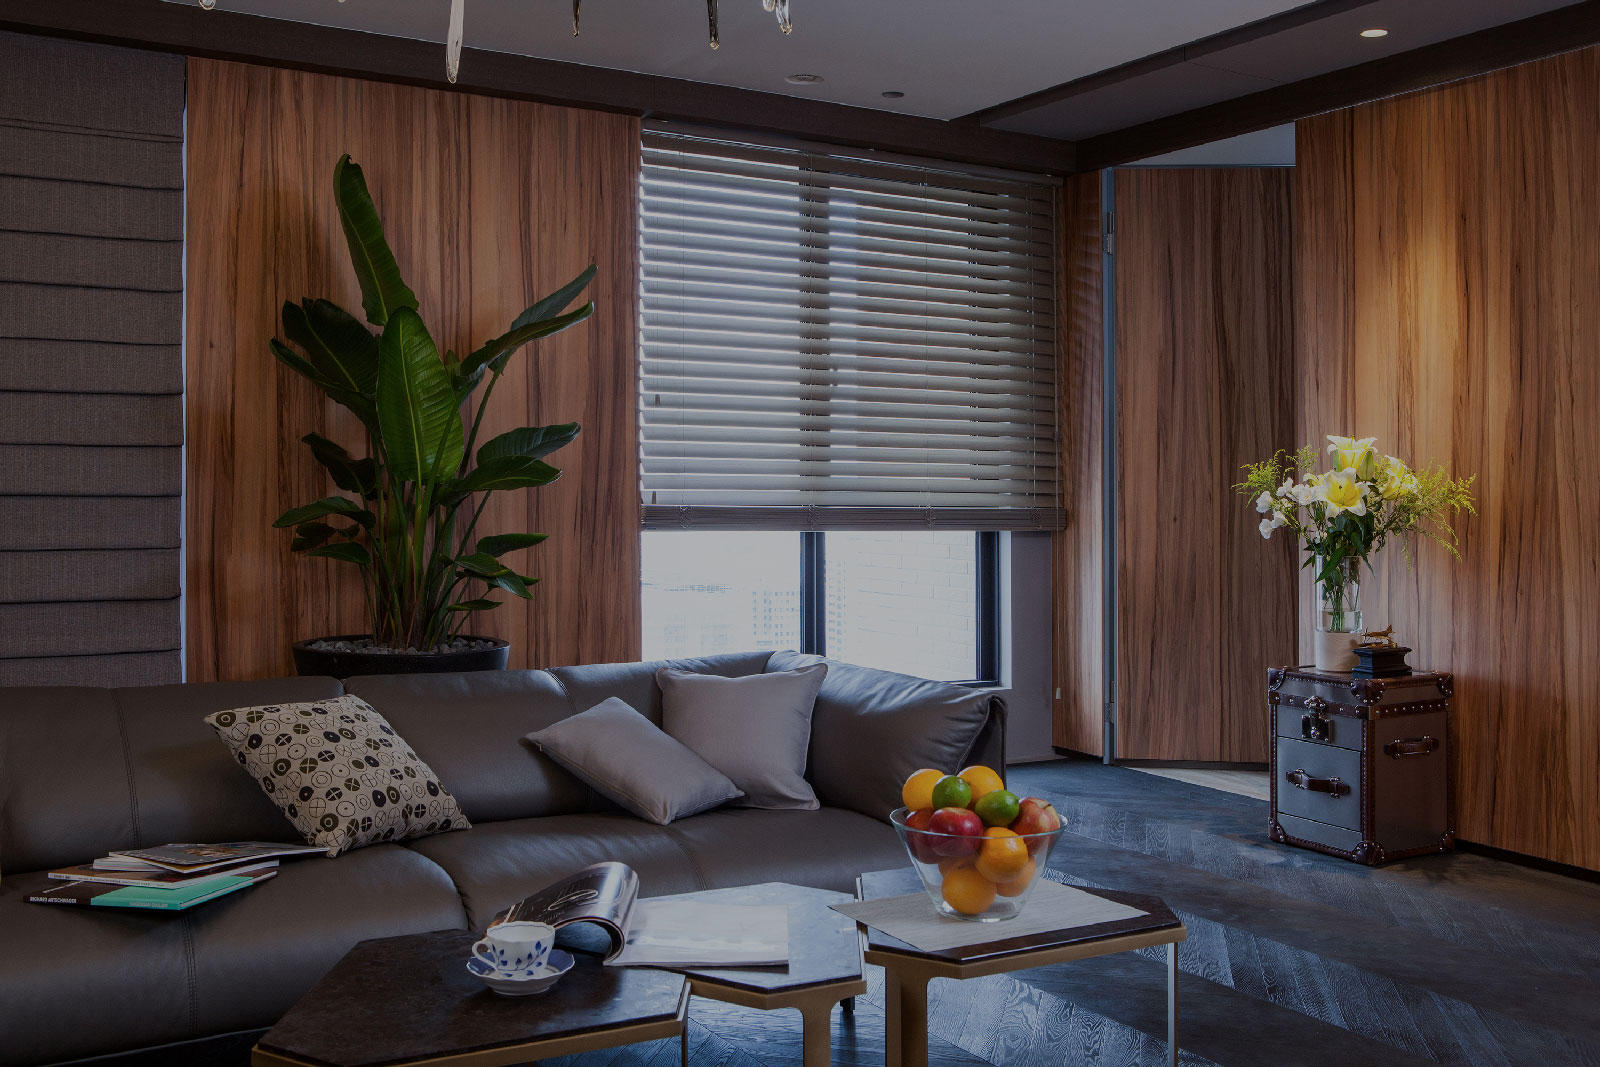 shutter example in modern living room